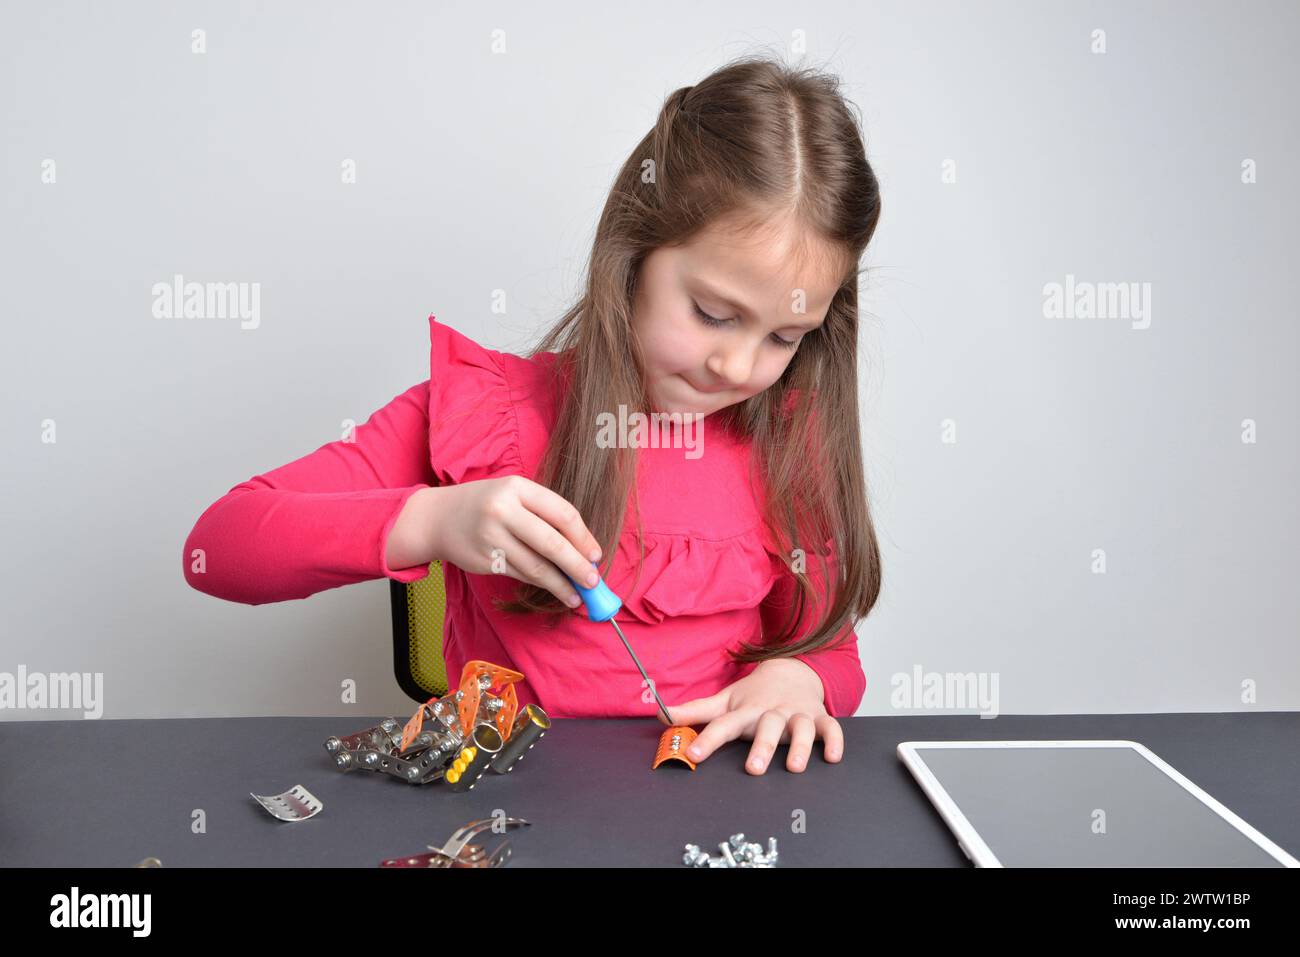 Das kleine Mädchen schraubt Metallteile auf einen Roboter. Konzept des praktischen Lernens, der Bildung, der Kreativität und der technischen Erforschung Stockfoto